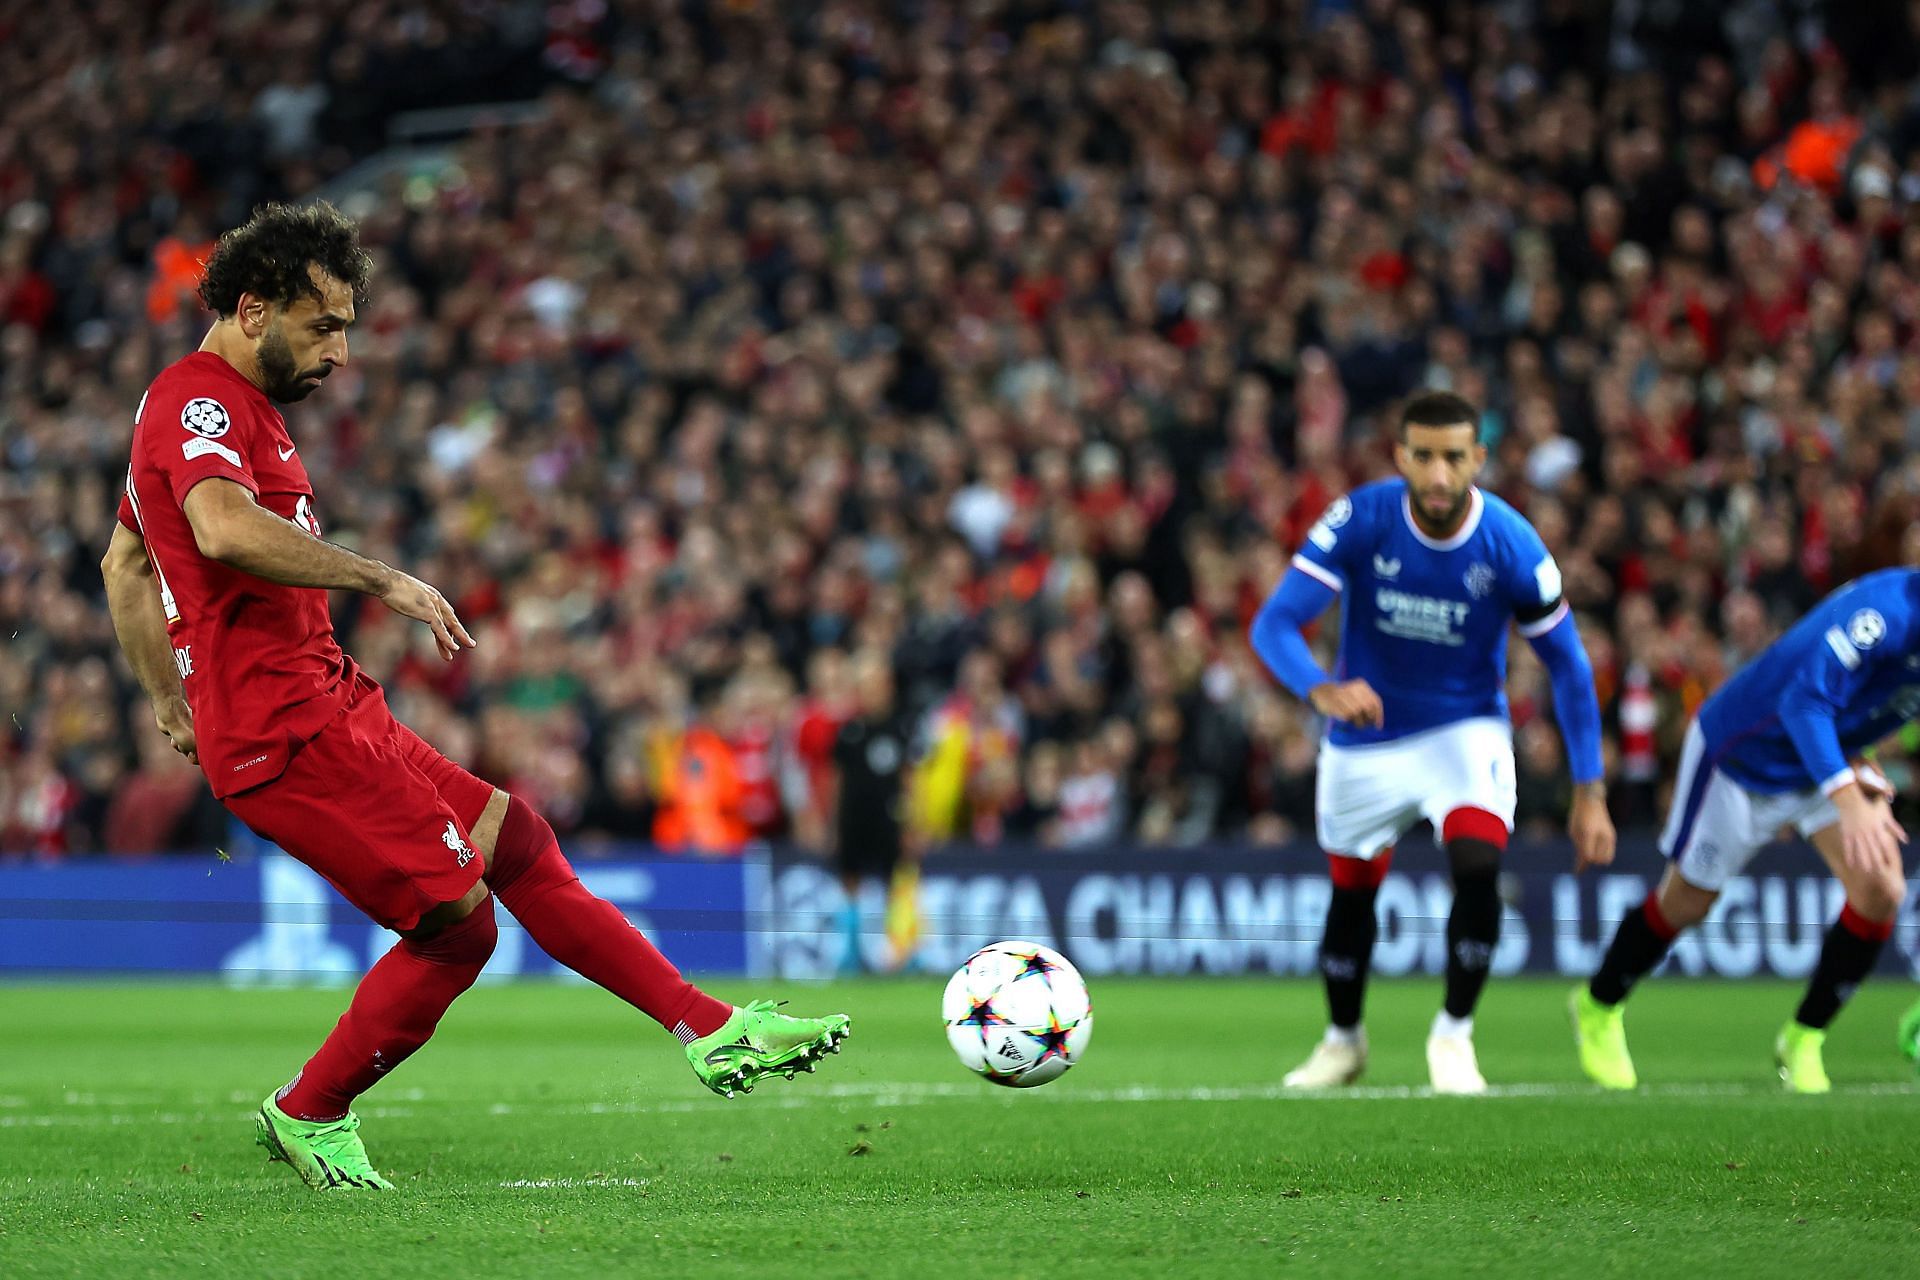 Mohamed Salah converts the spot-kick against Rangers